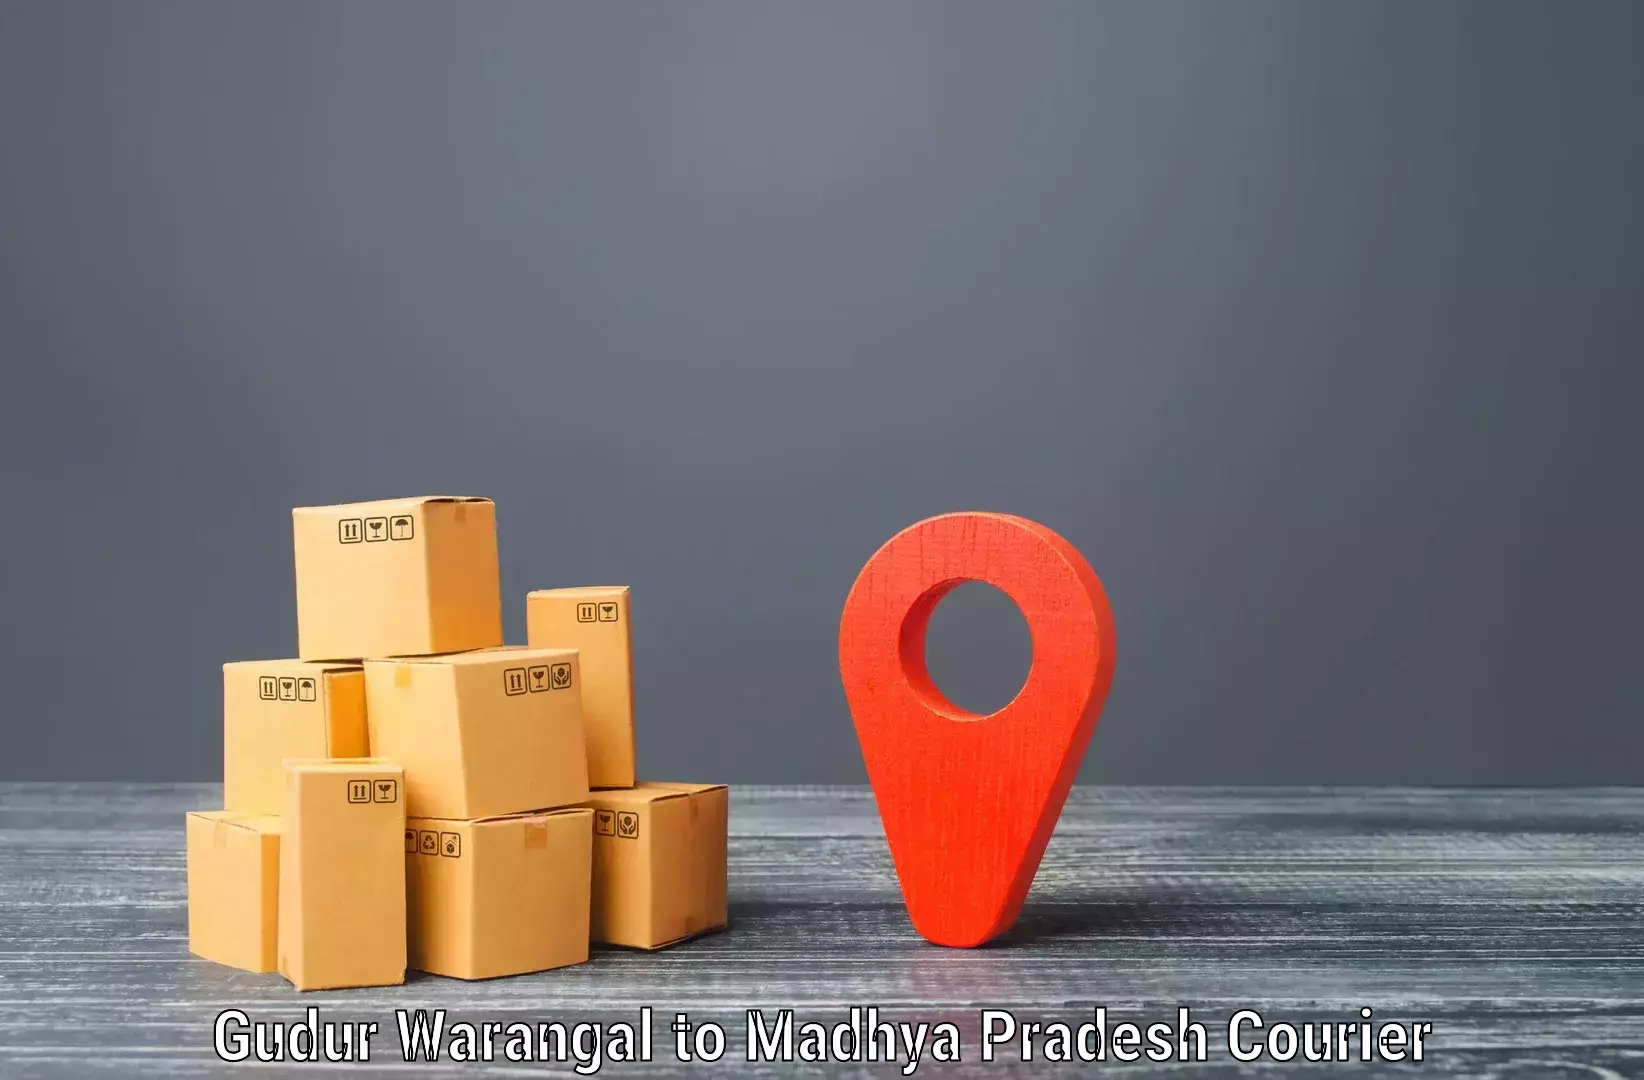 Advanced courier platforms Gudur Warangal to Niwari